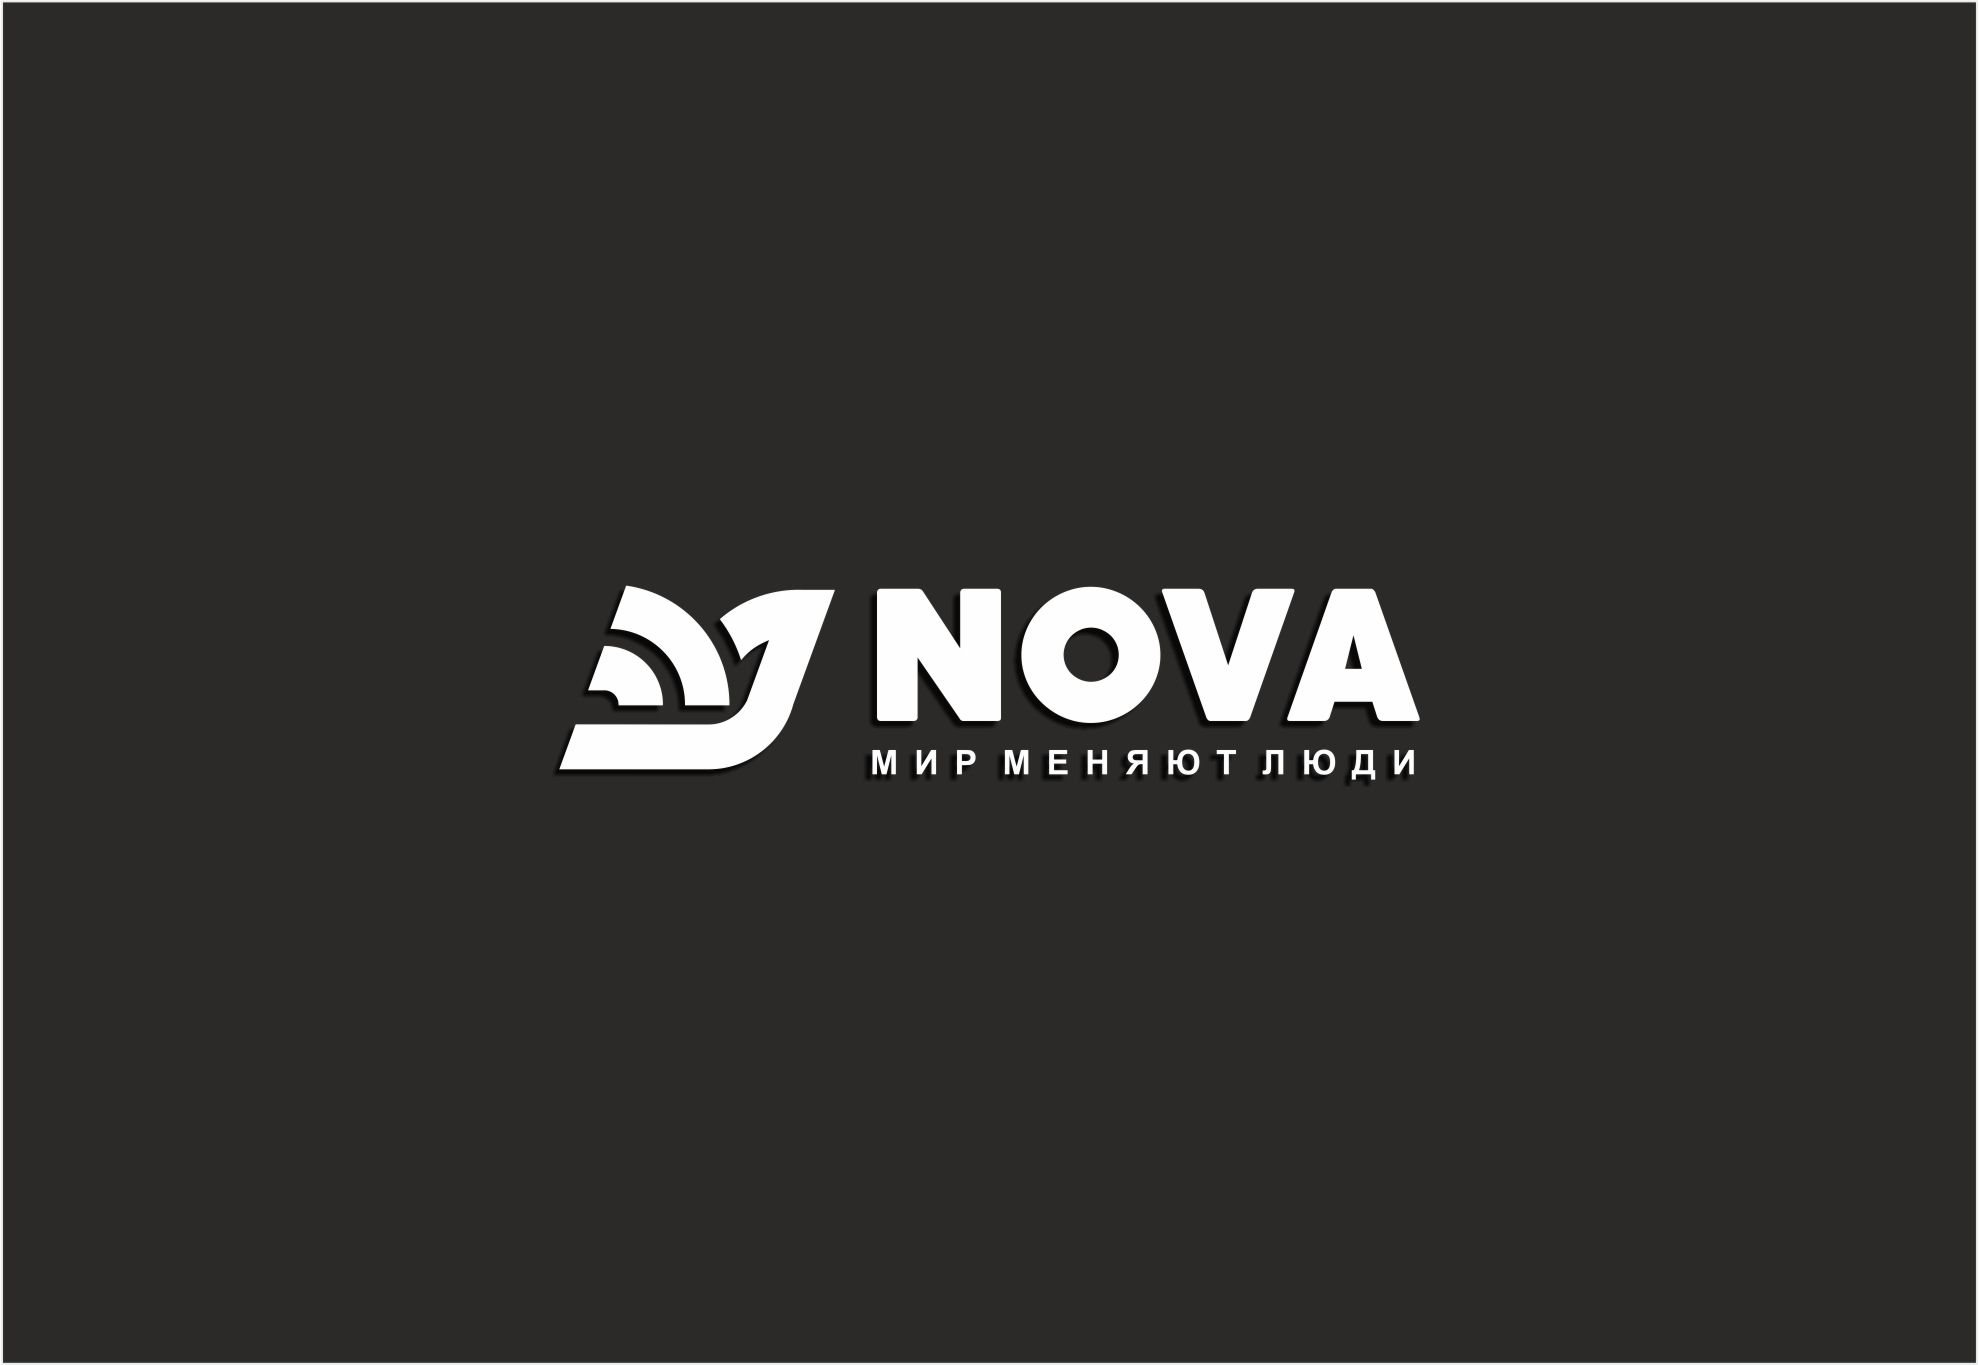 Логотип для Nova - дизайнер SobolevS21